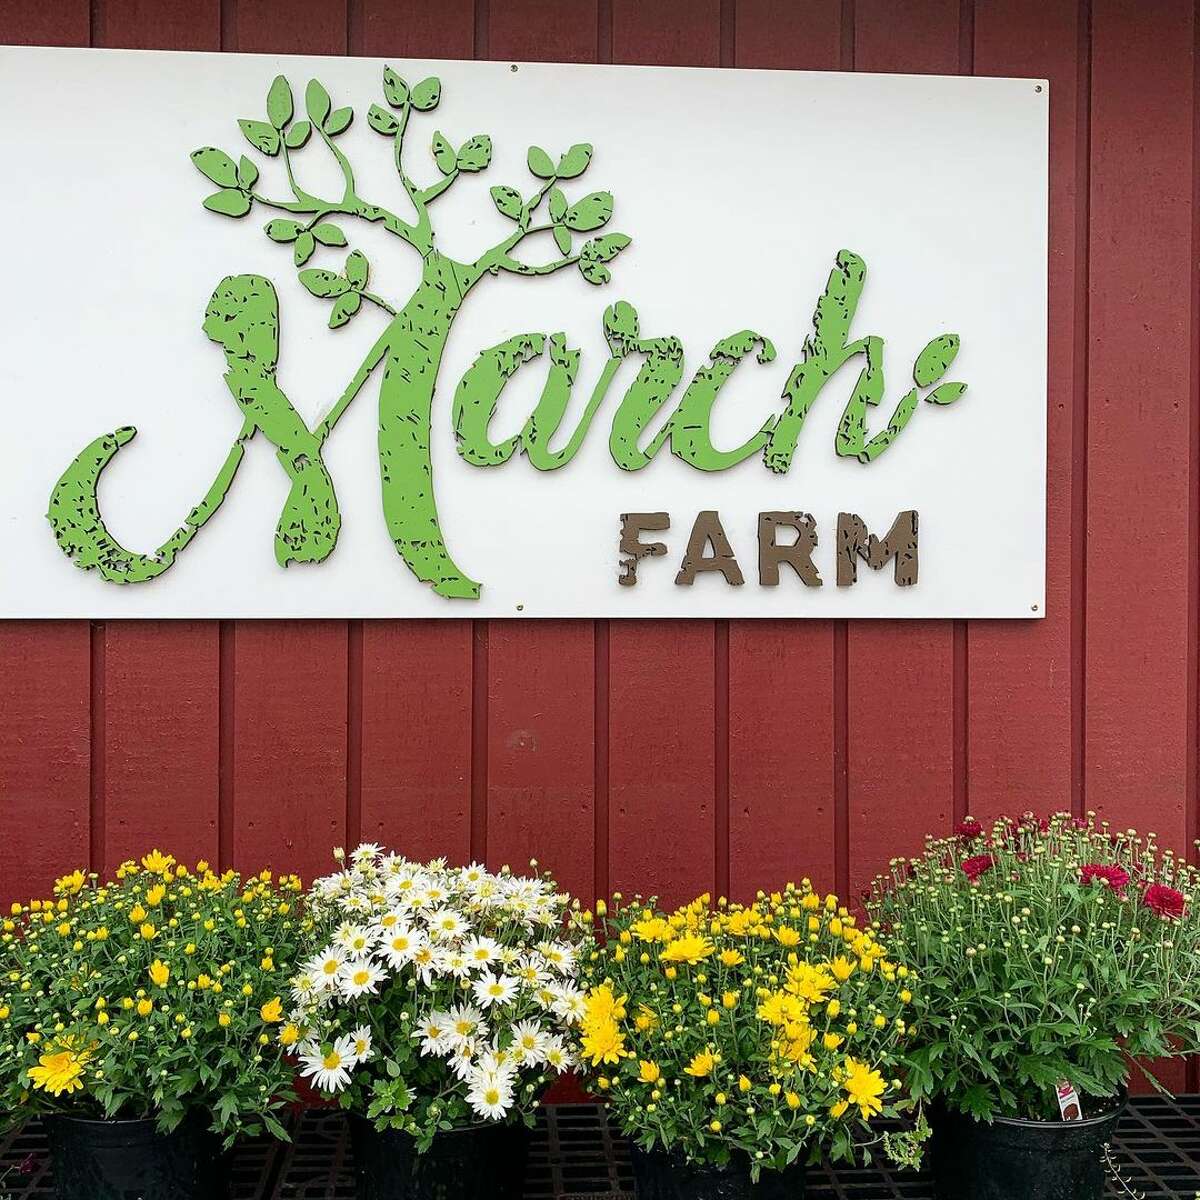 March Farm in Bethlehem, Connecticut.